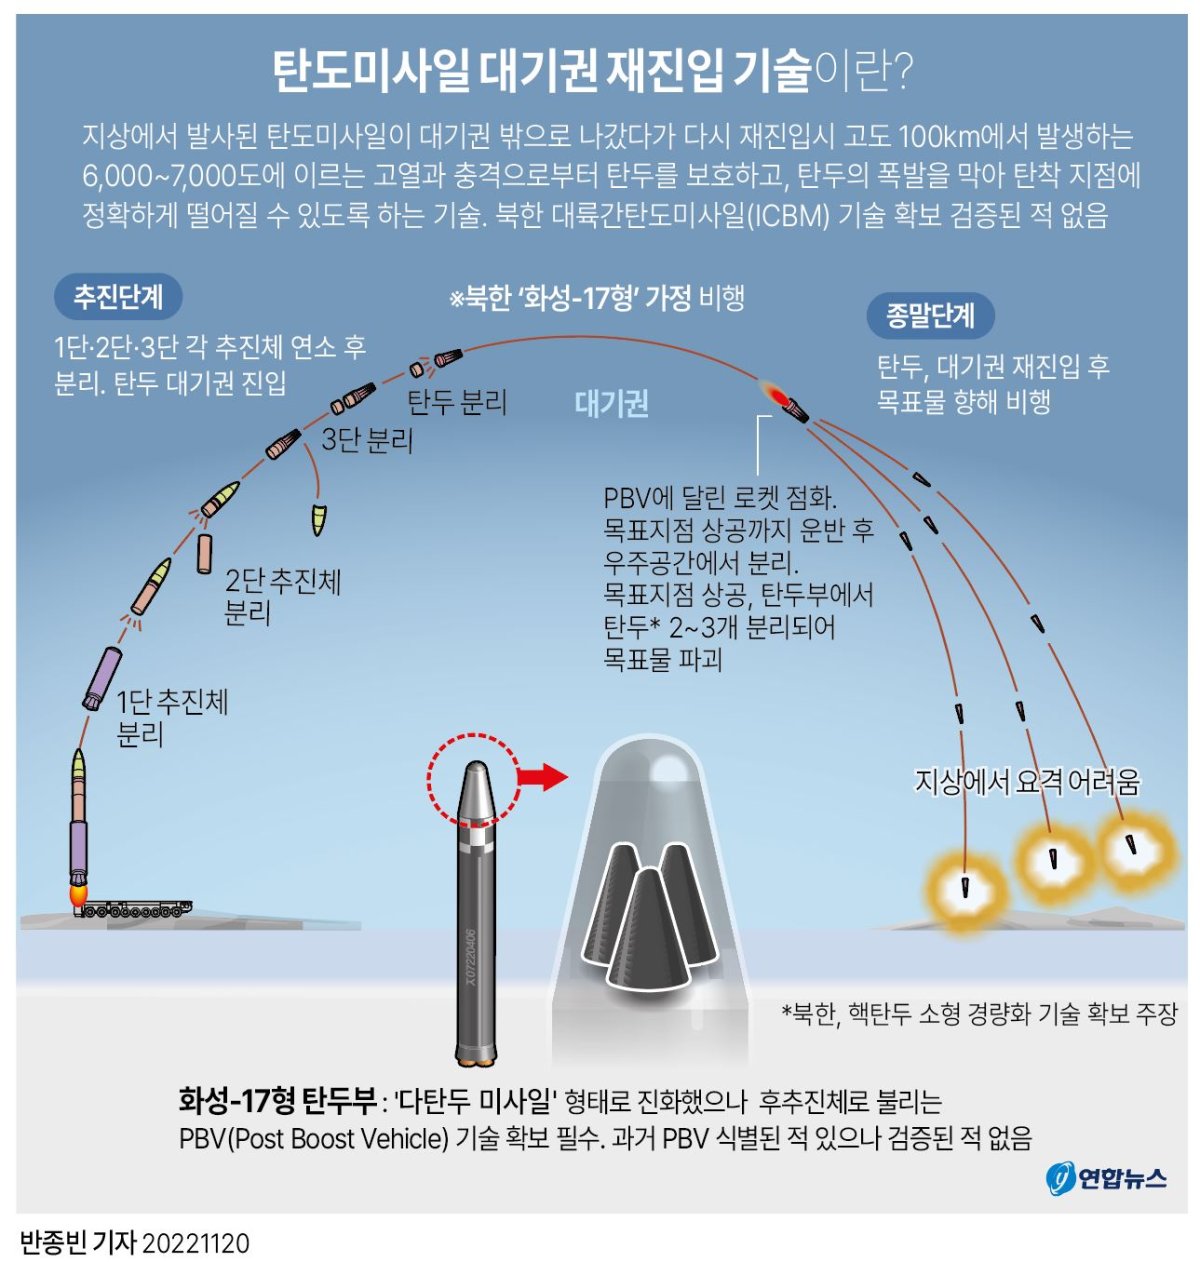 [그래픽] 탄도미사일 대기권 재진입 기술이란?